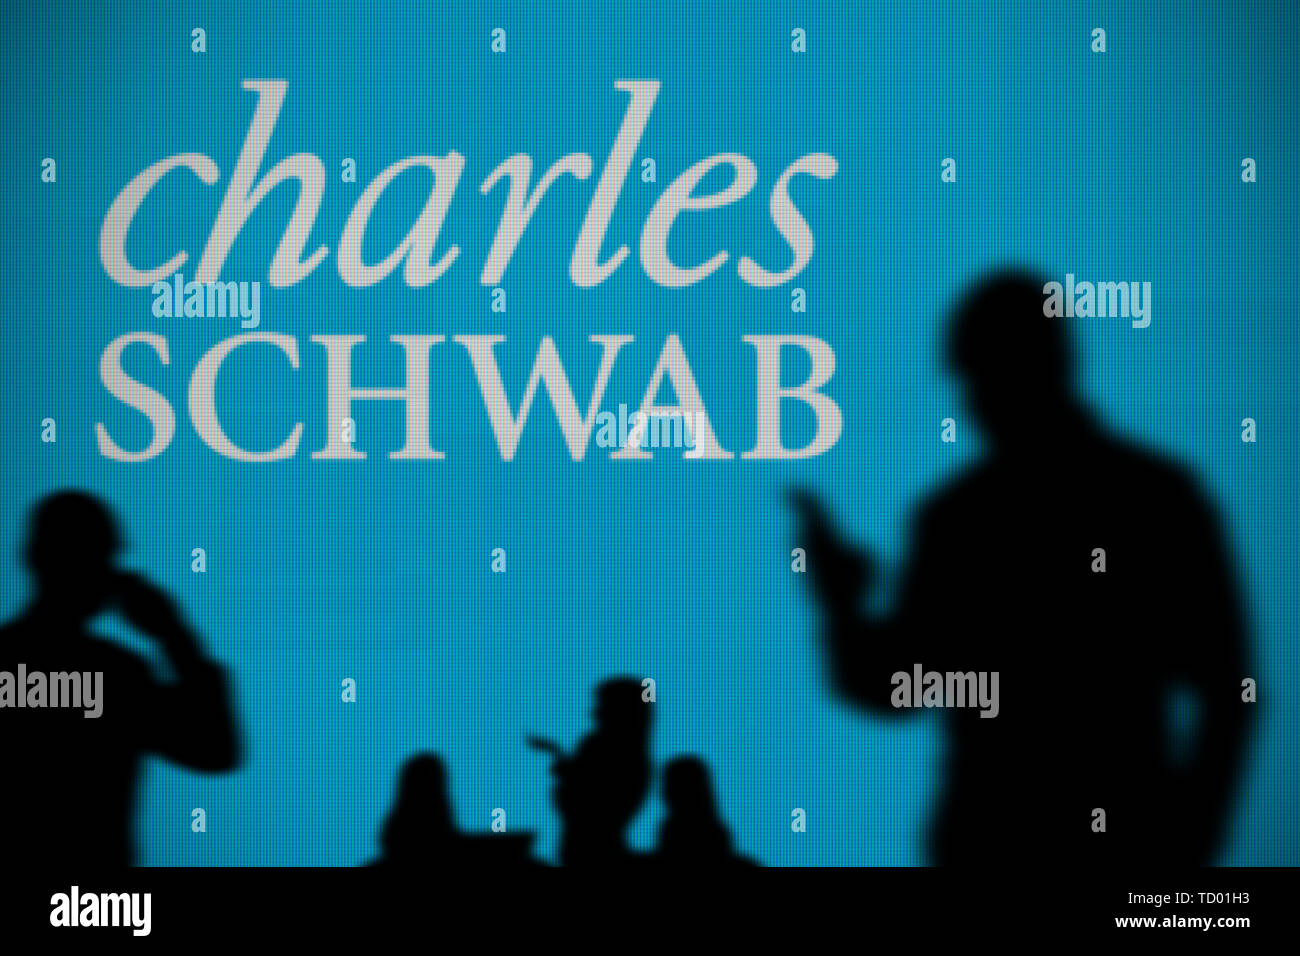 Die Charles Schwab Logo ist auf einen LED-Bildschirm im Hintergrund, während eine Silhouette Person ein Smartphone verwendet im Vordergrund (nur redaktionelle Nutzung) Stockfoto